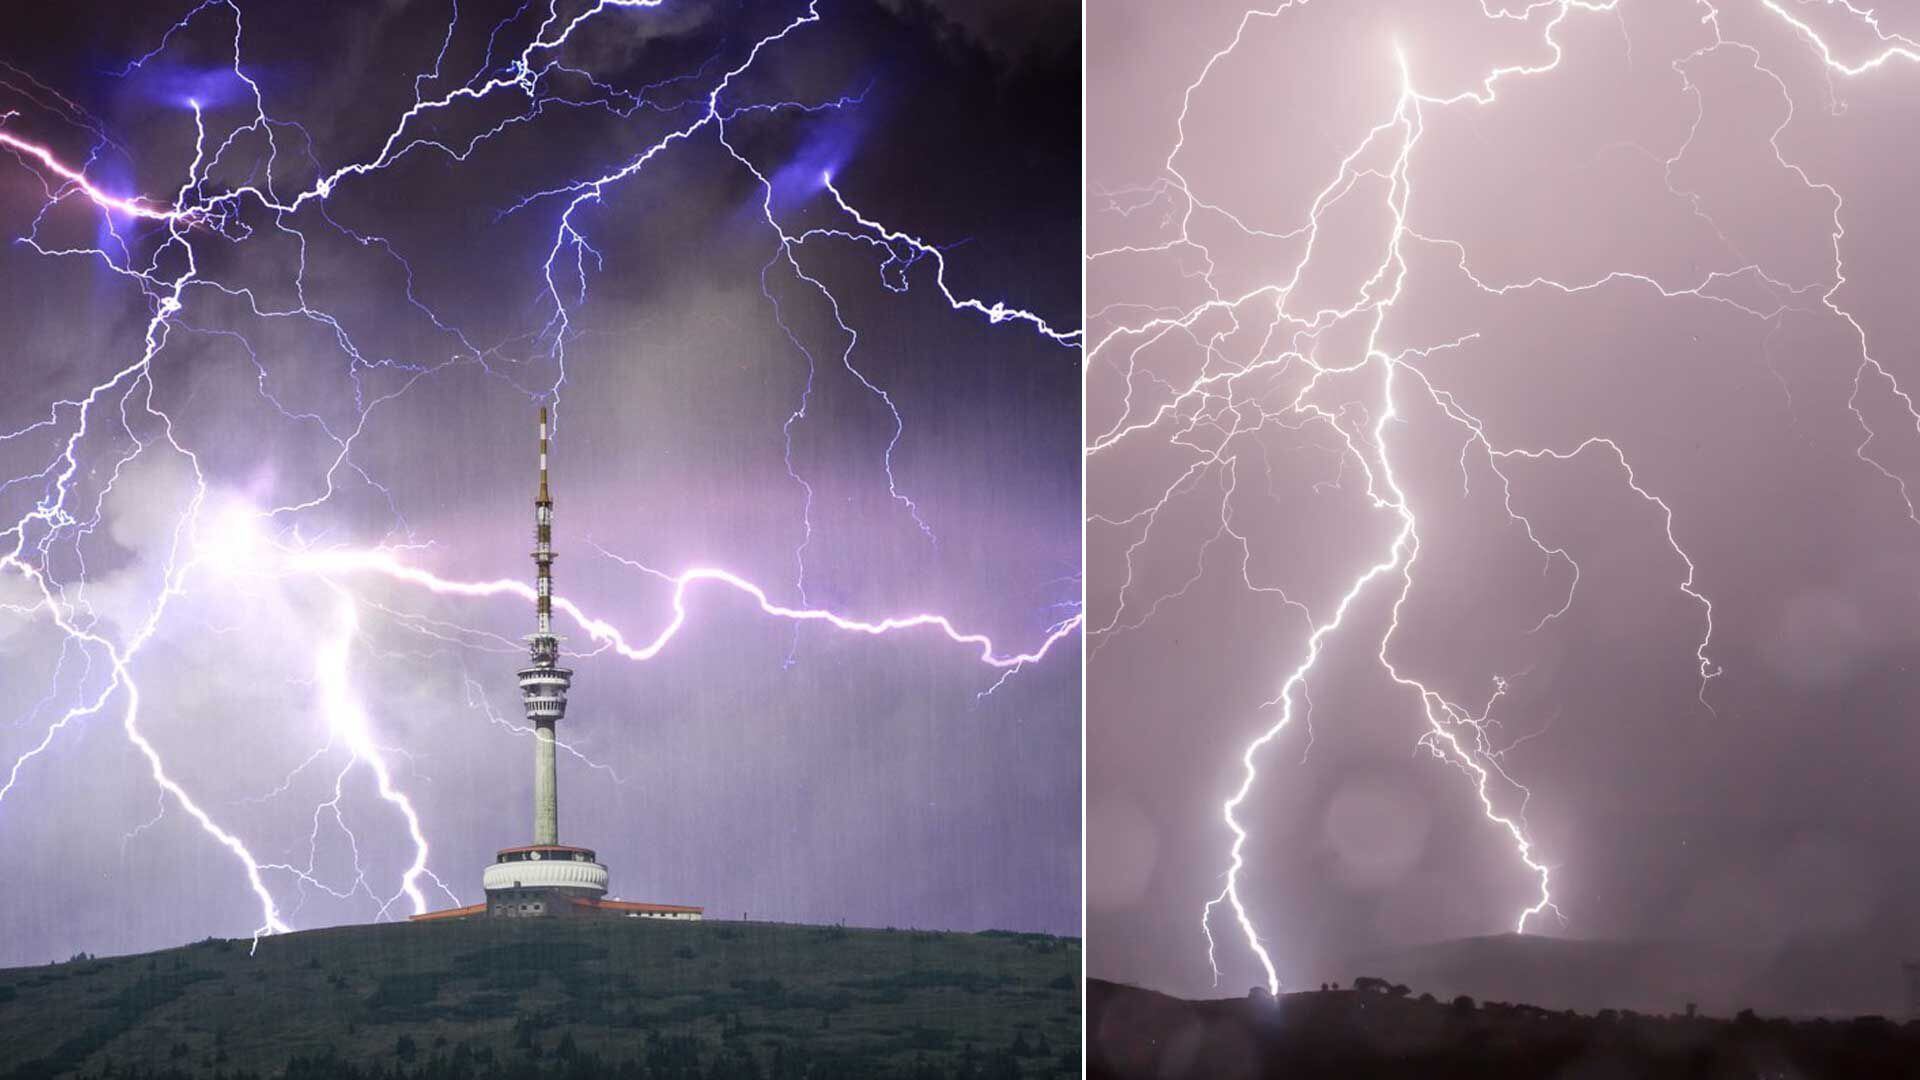 Una centella es un fenómeno eléctrico atmosférico raro que aparece durante tormentas eléctricas y cuya naturaleza sigue siendo un misterio para la ciencia.